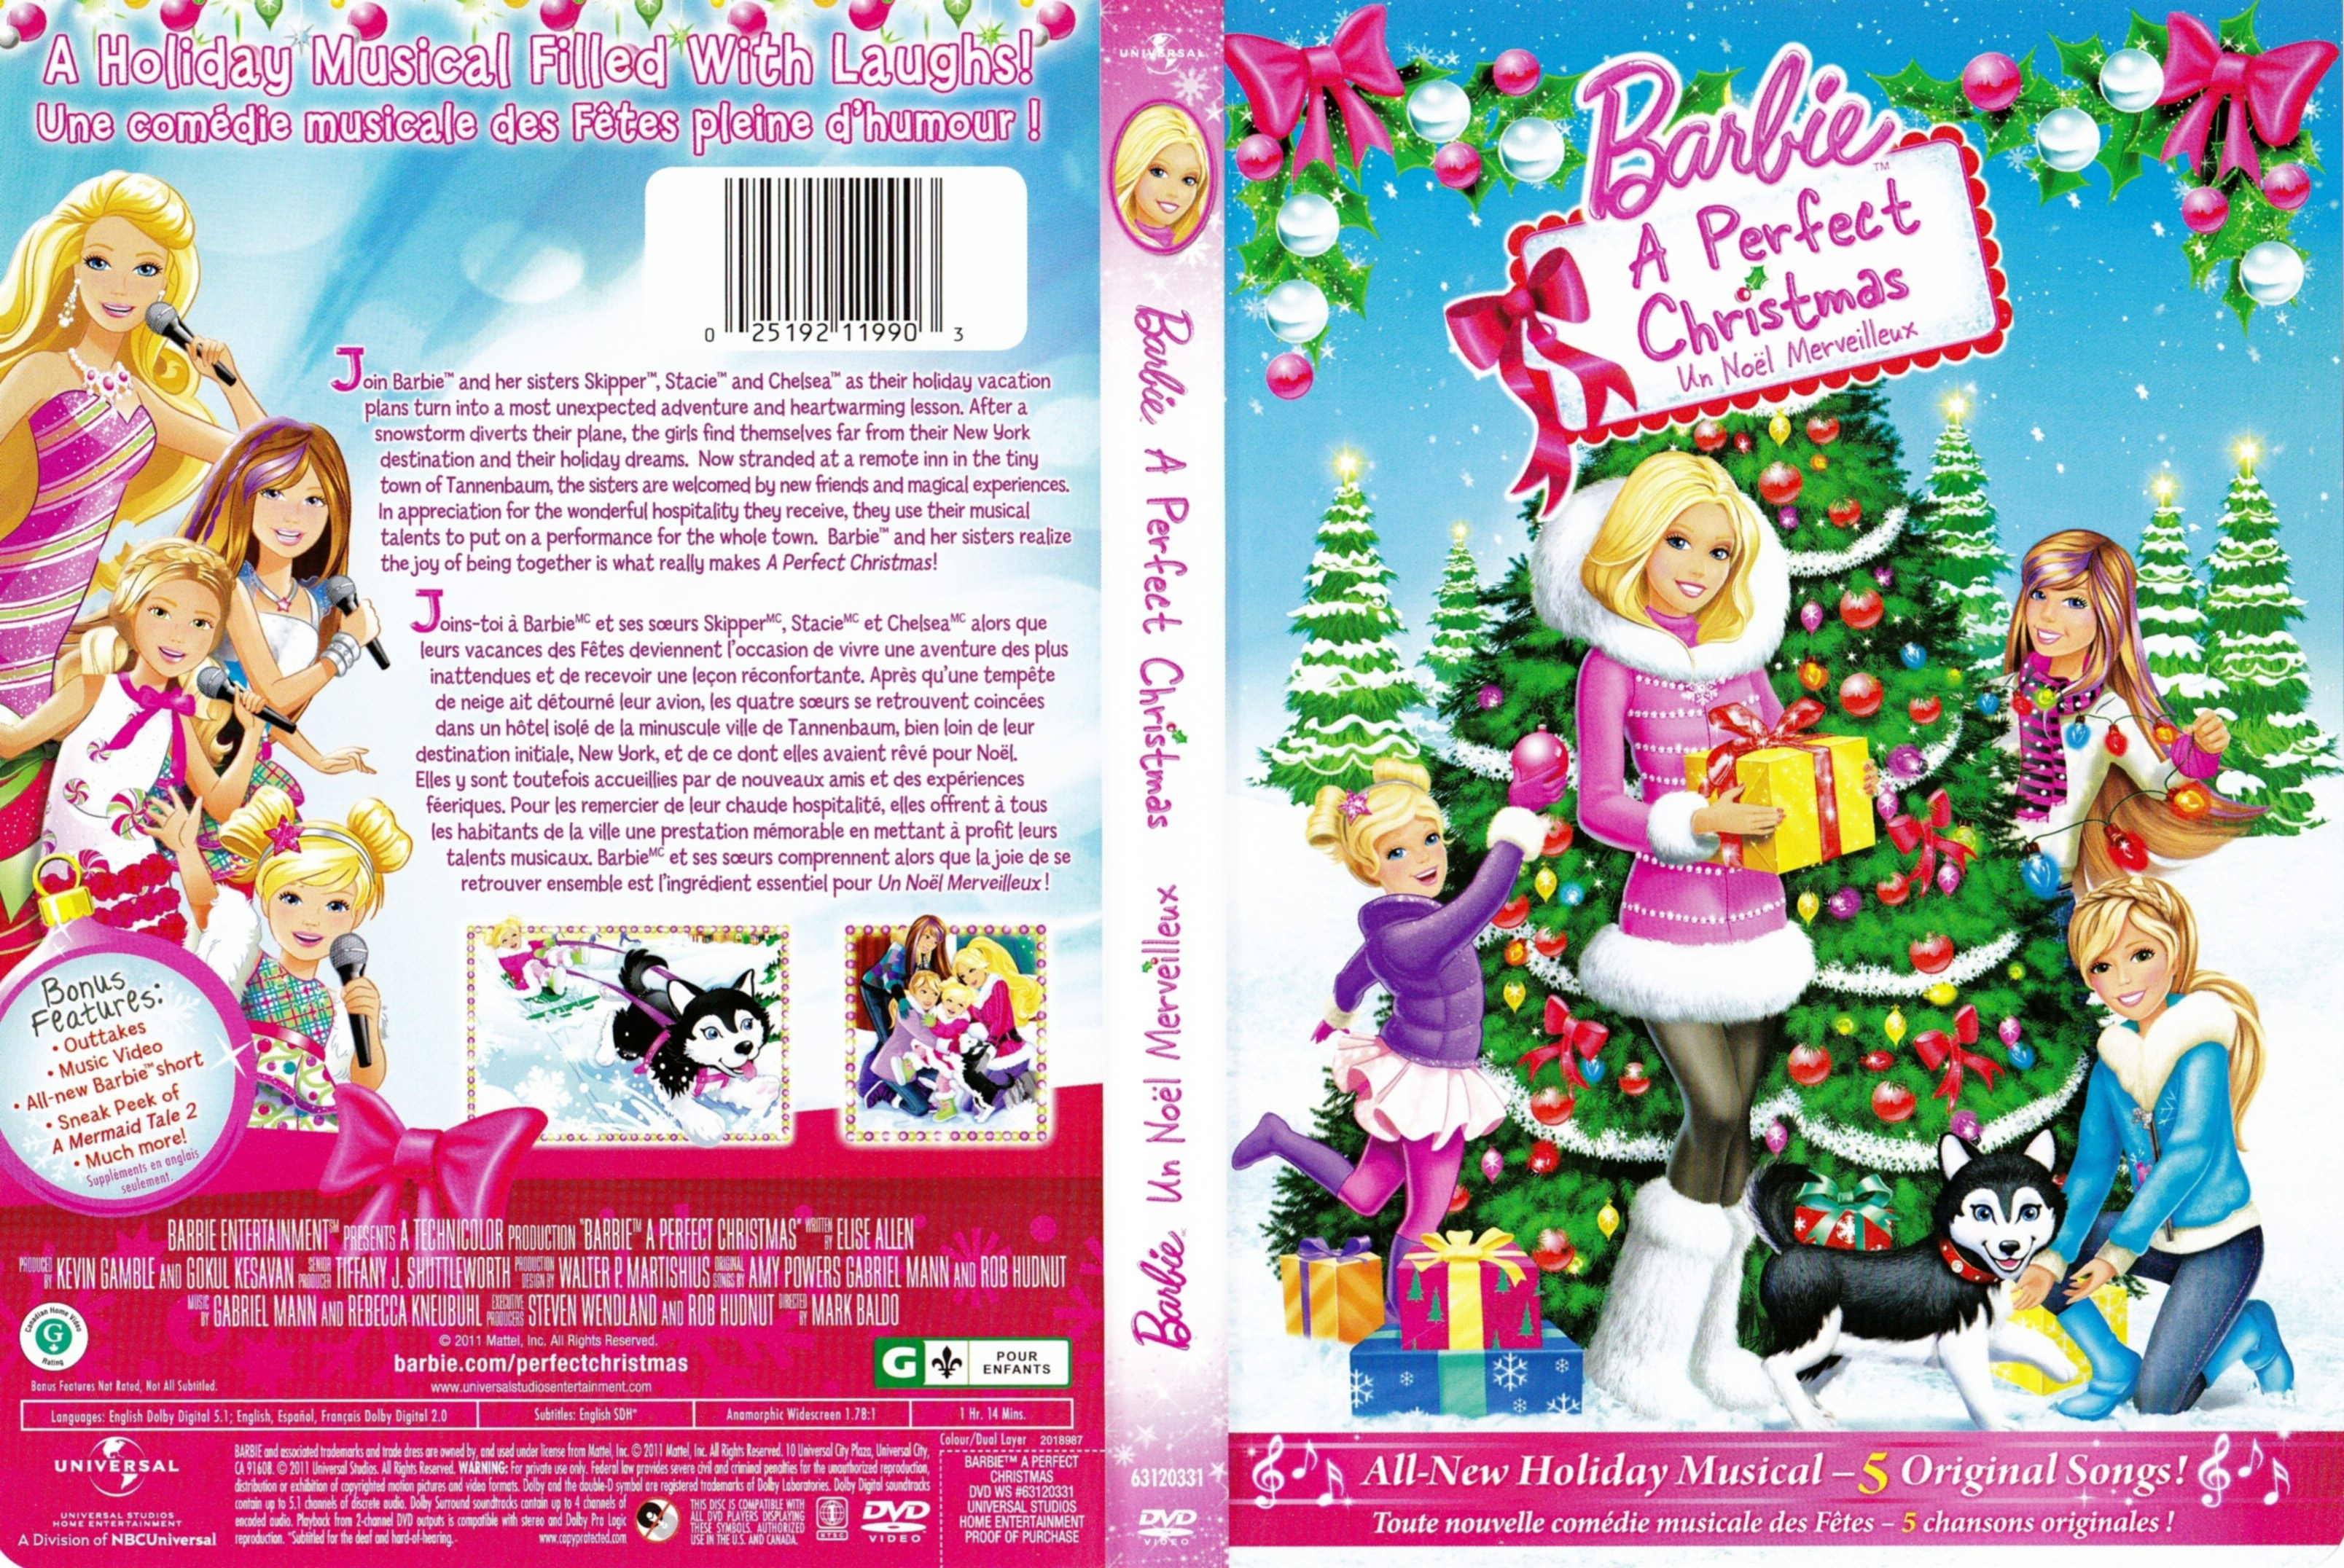 Jaquette DVD Barbie et un Noel Merveilleux - Barbie a perfect Christmas (Canadienne)